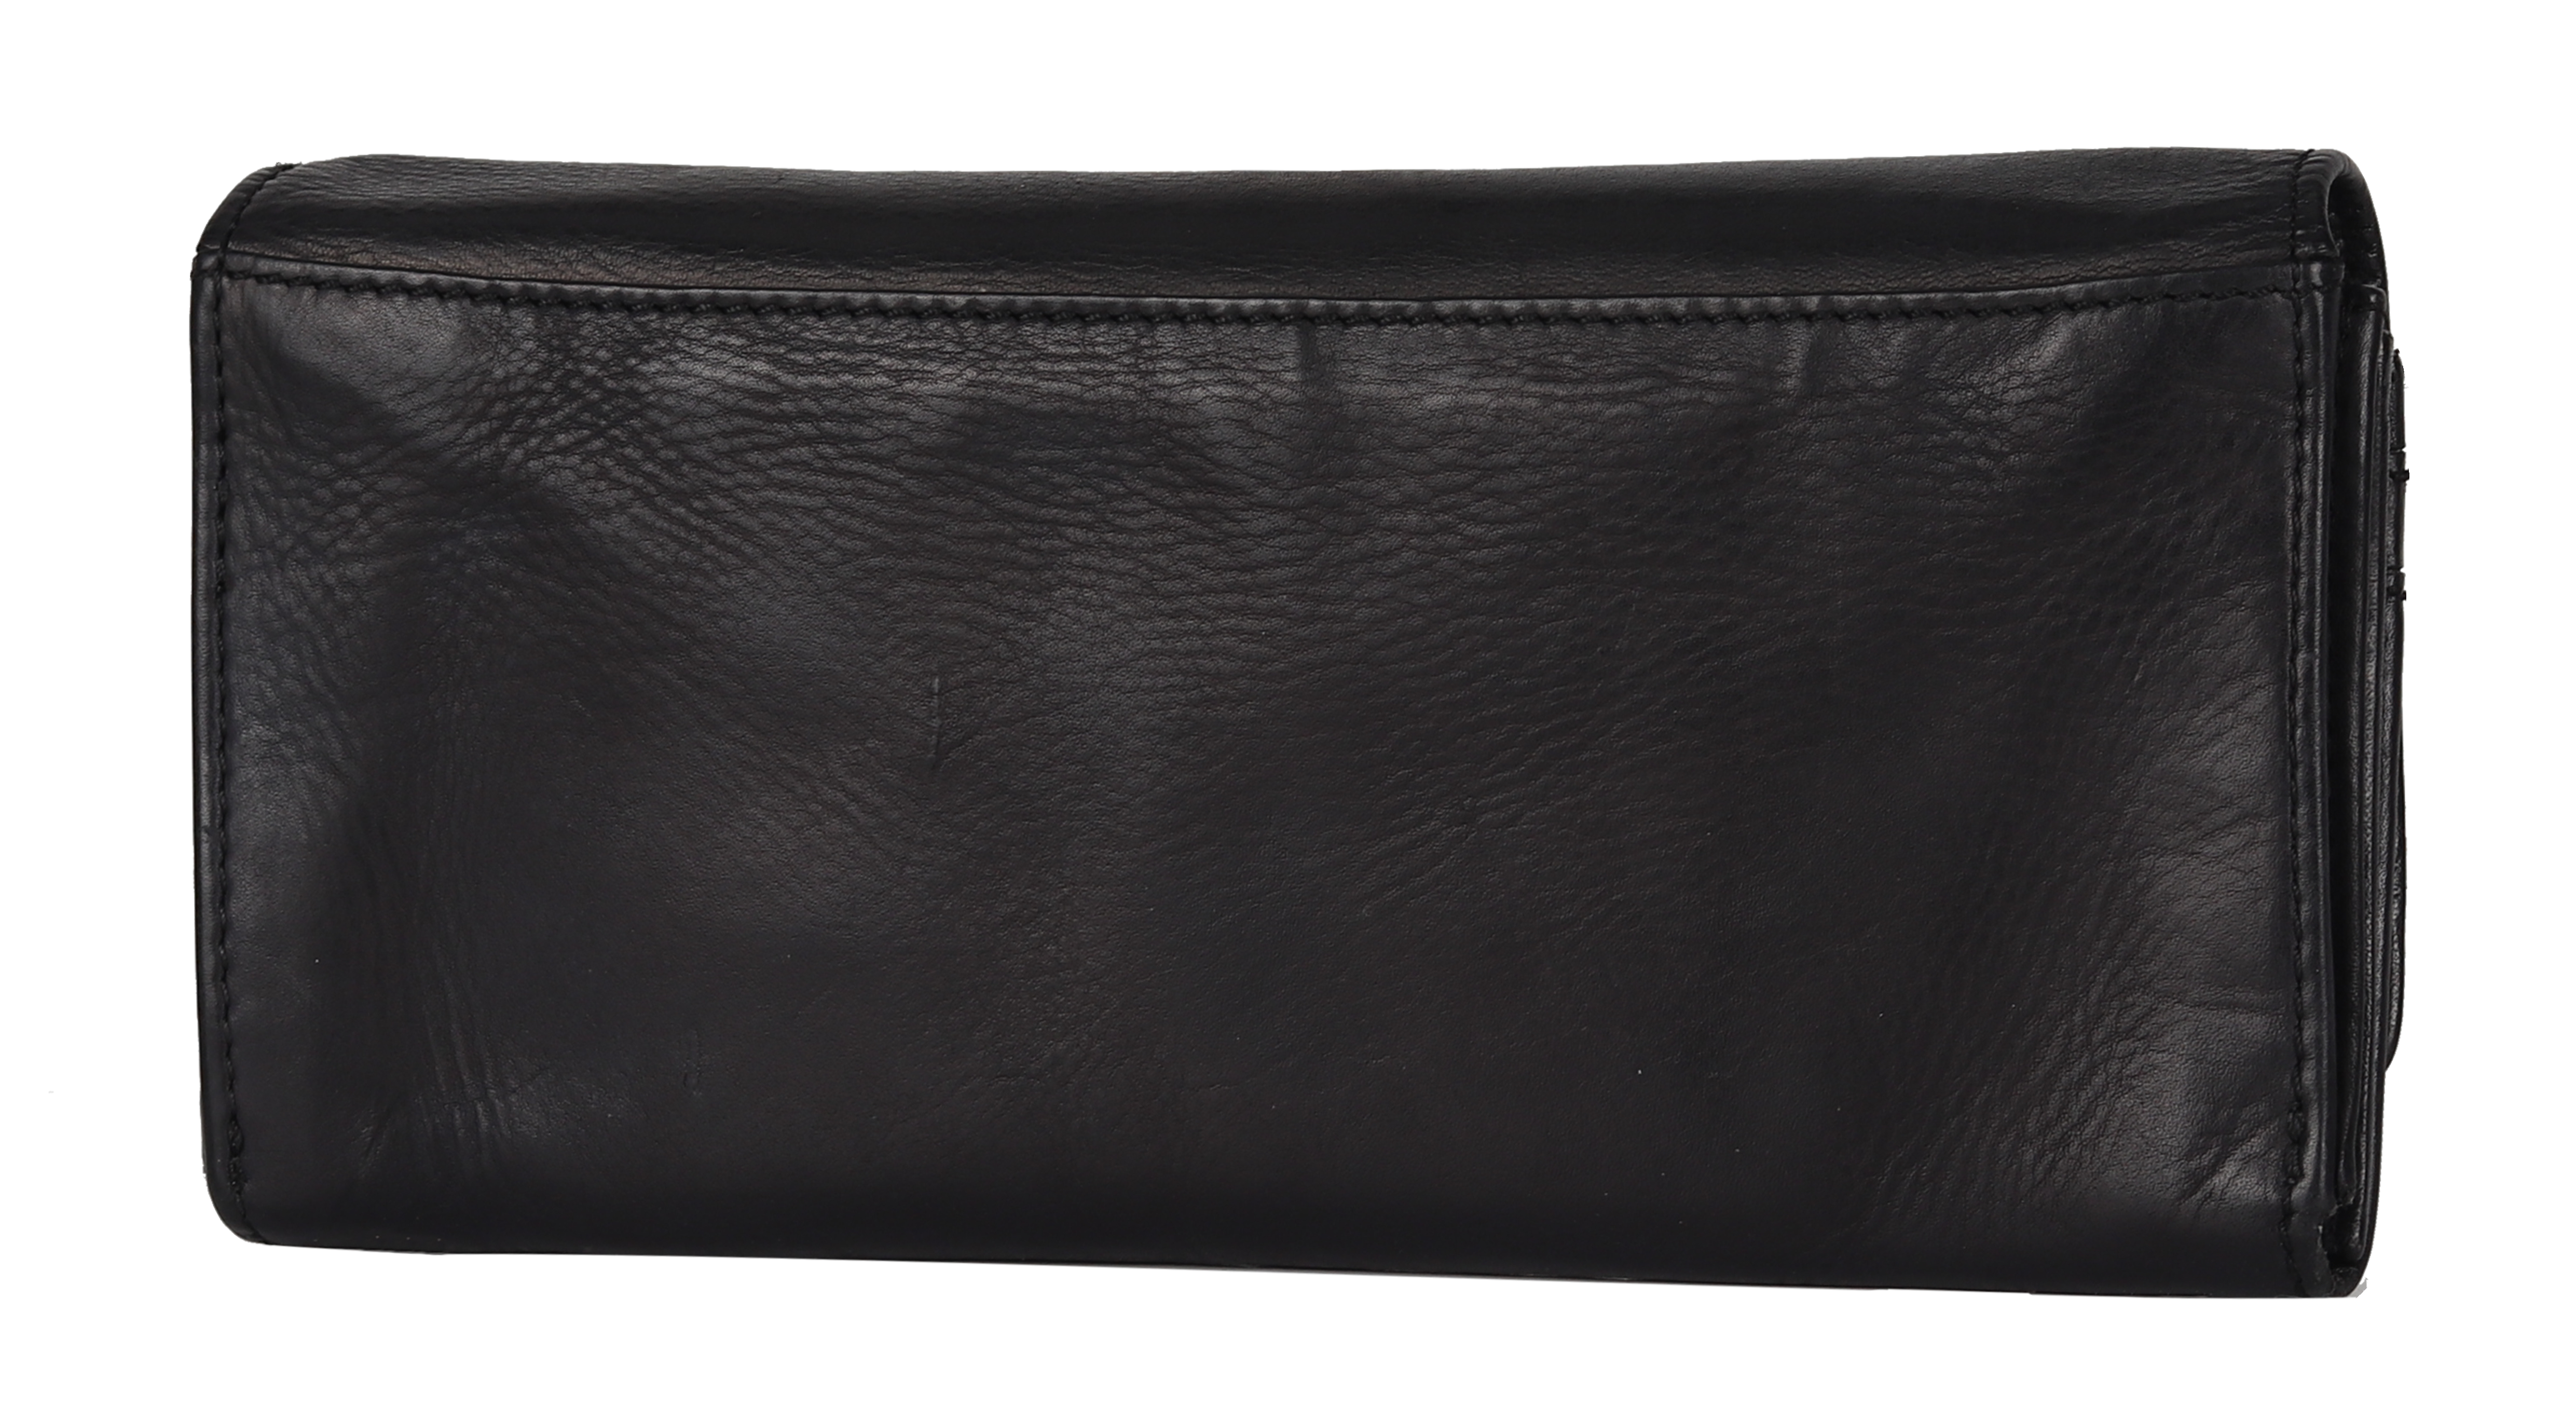 BOL Women's Leather Clutch Wallet